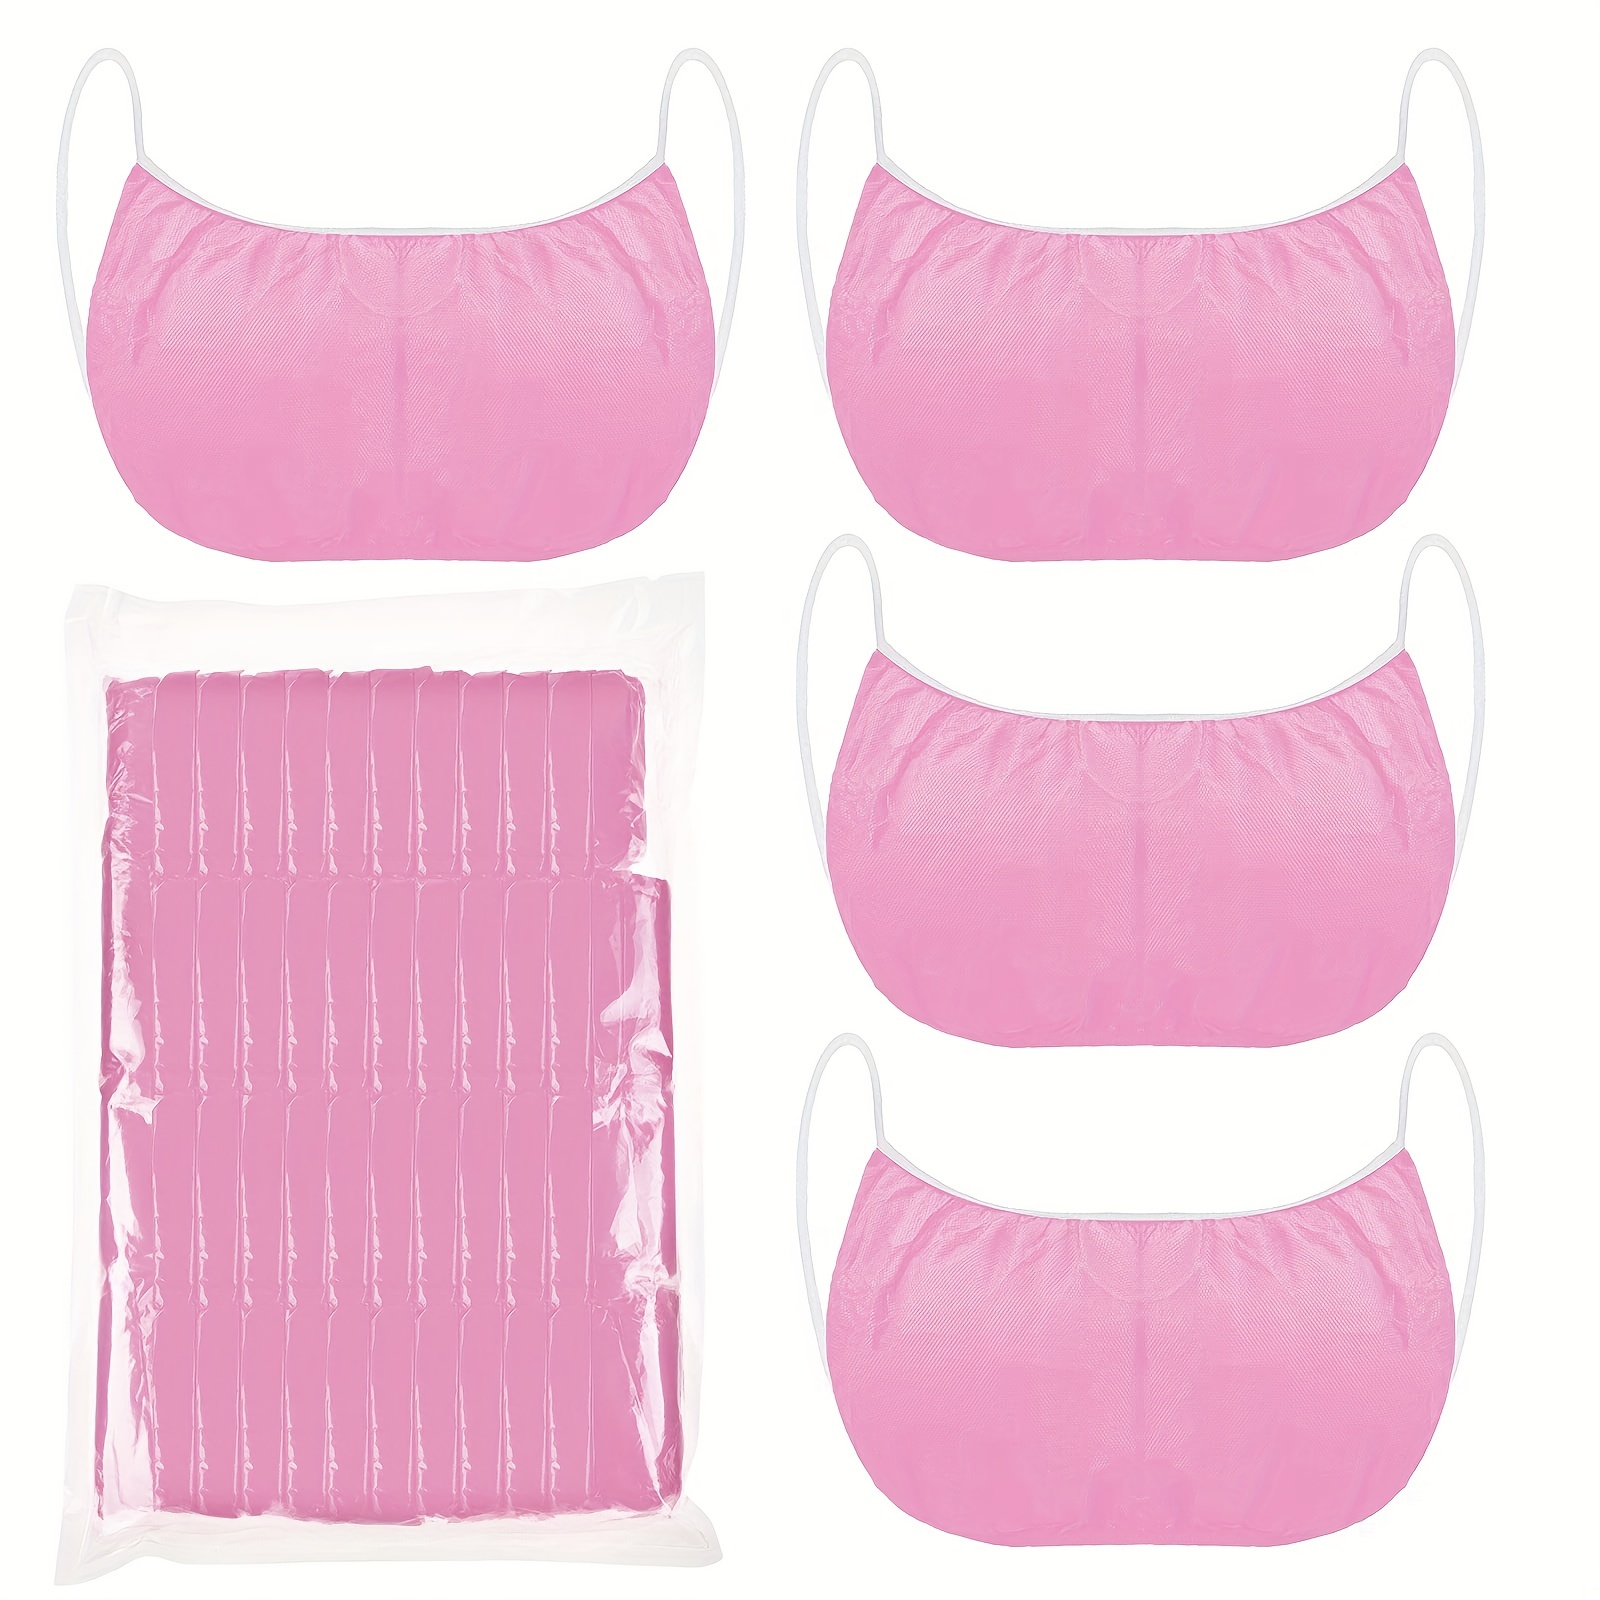 50Pcs Disposable Nonwoven Bras Women's Disposable Spa Top Garment Underwear  * Suitable For Spa Salon Massage Travel & Sunbathing